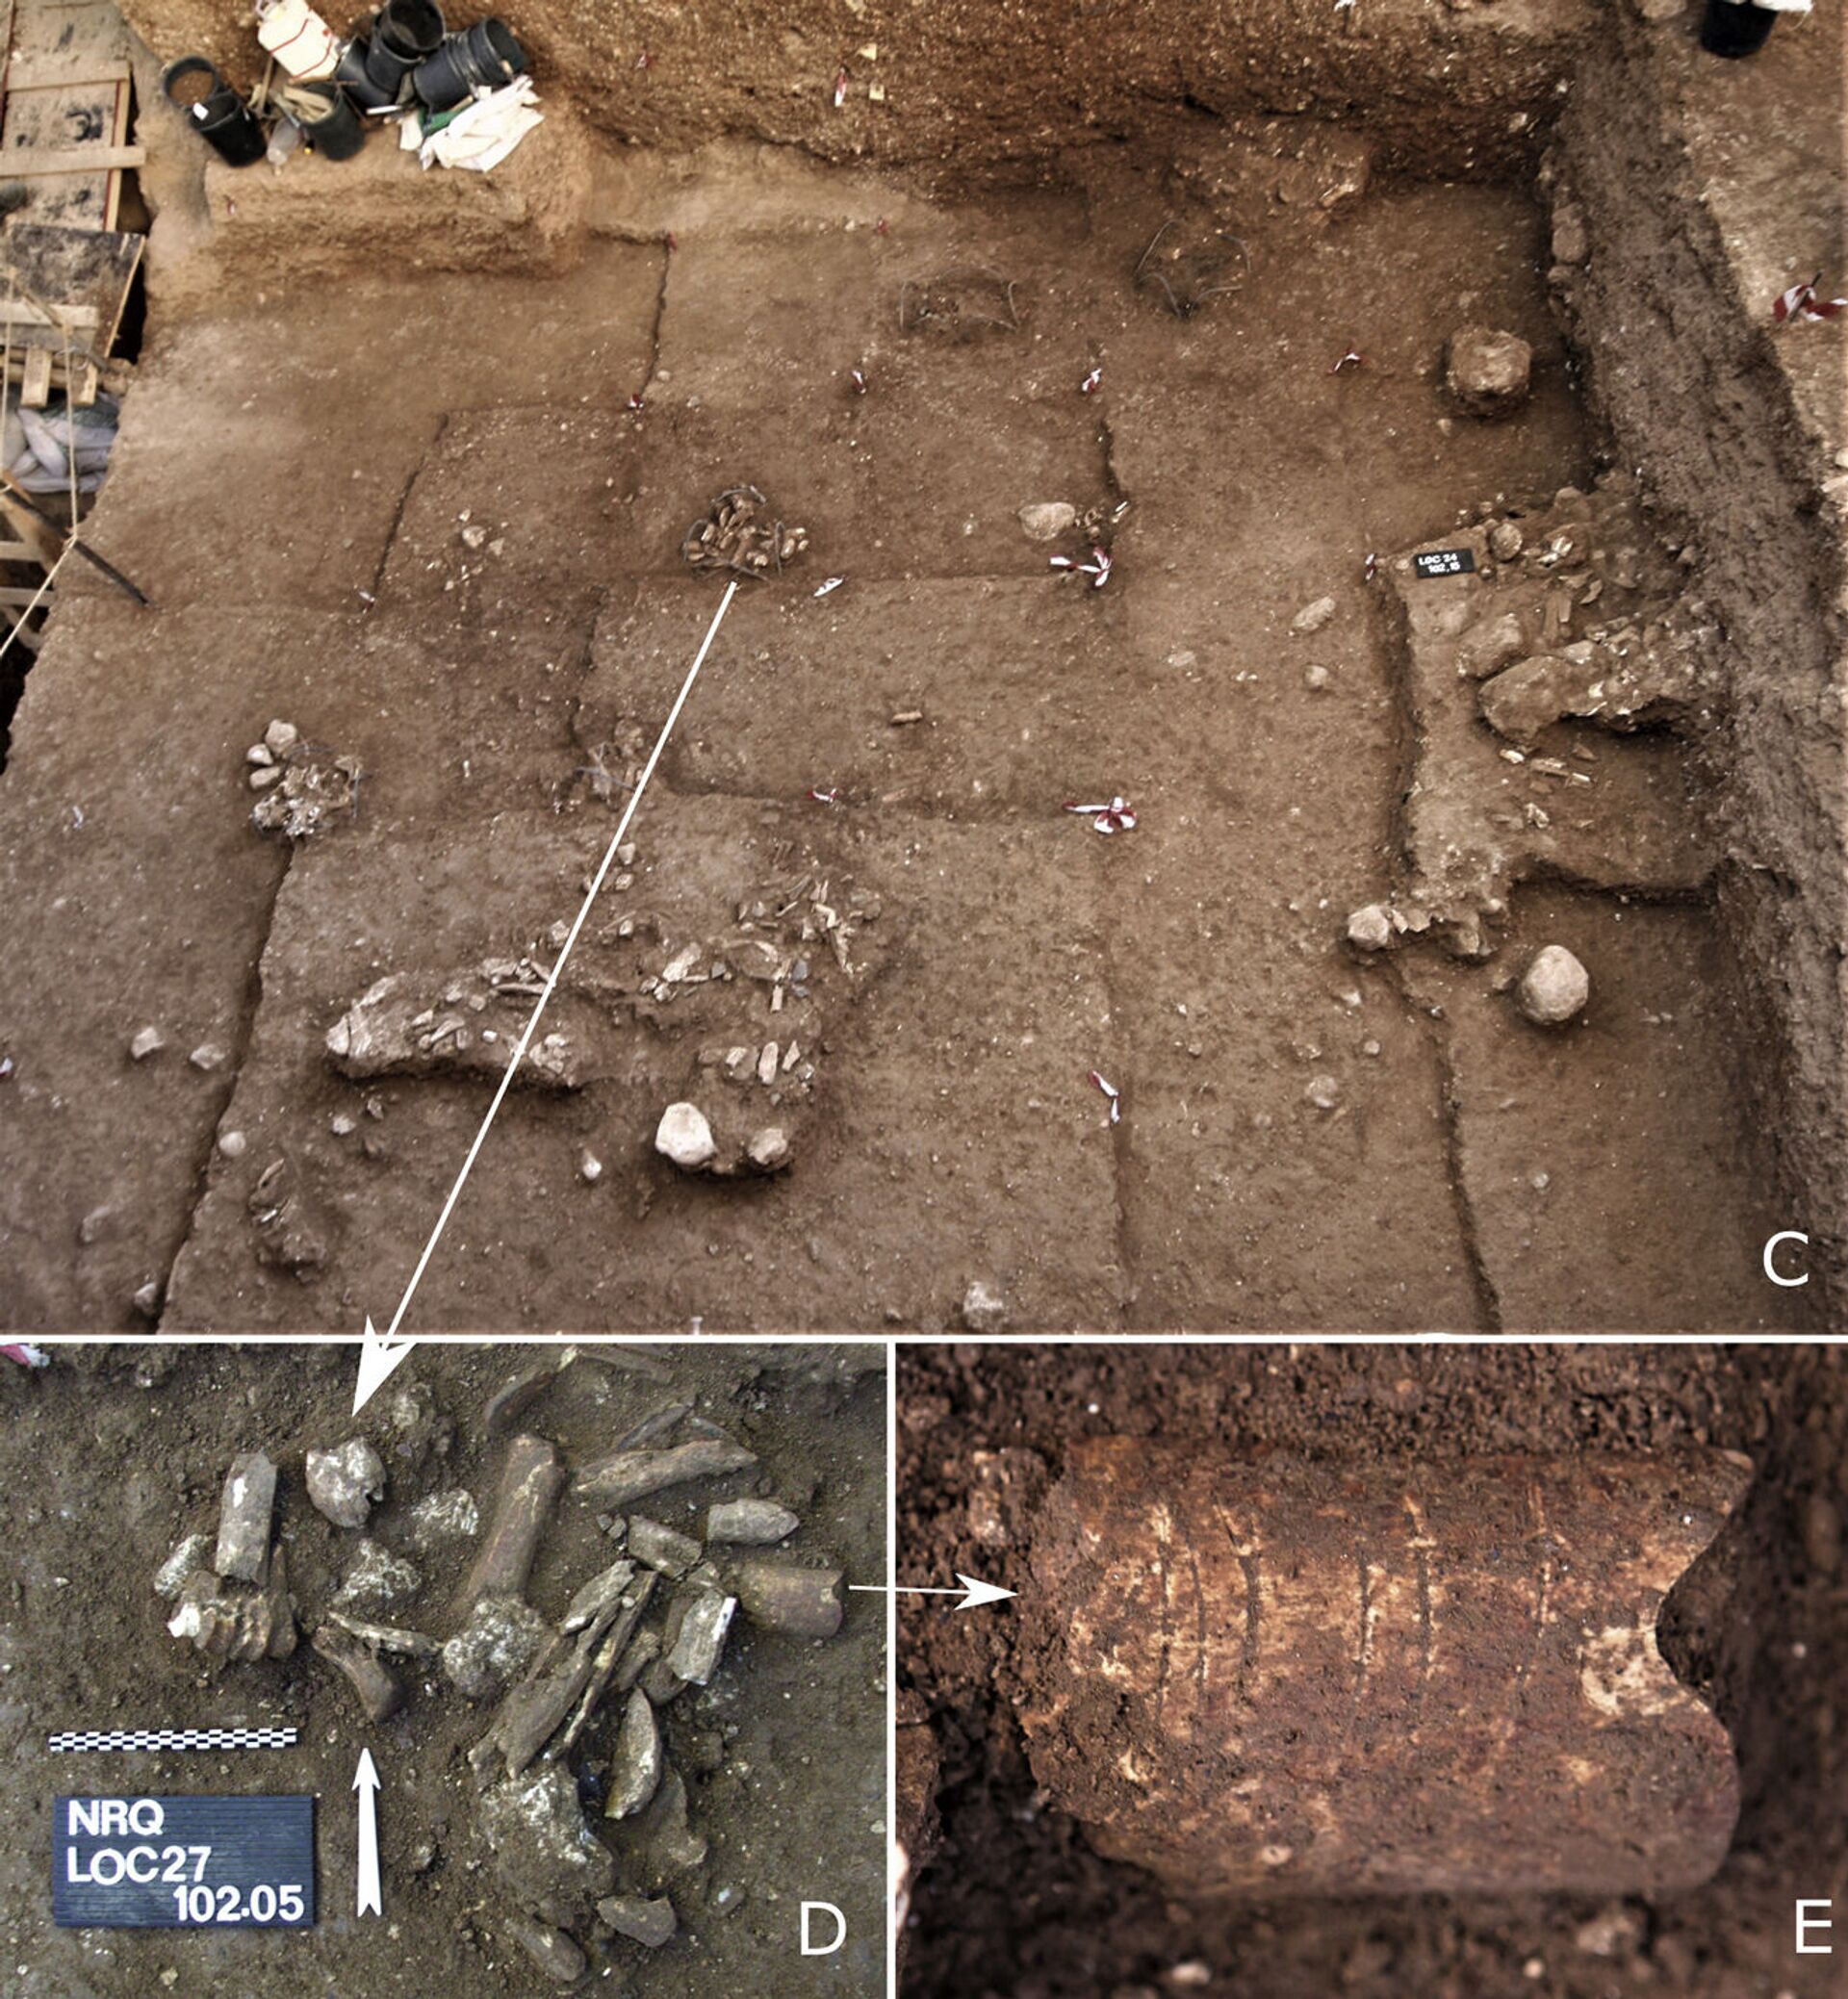 Gravuras de 120 mil anos talhadas em osso podem ser símbolos mais antigos feitos por humanos (FOTOS) - Sputnik Brasil, 1920, 04.02.2021